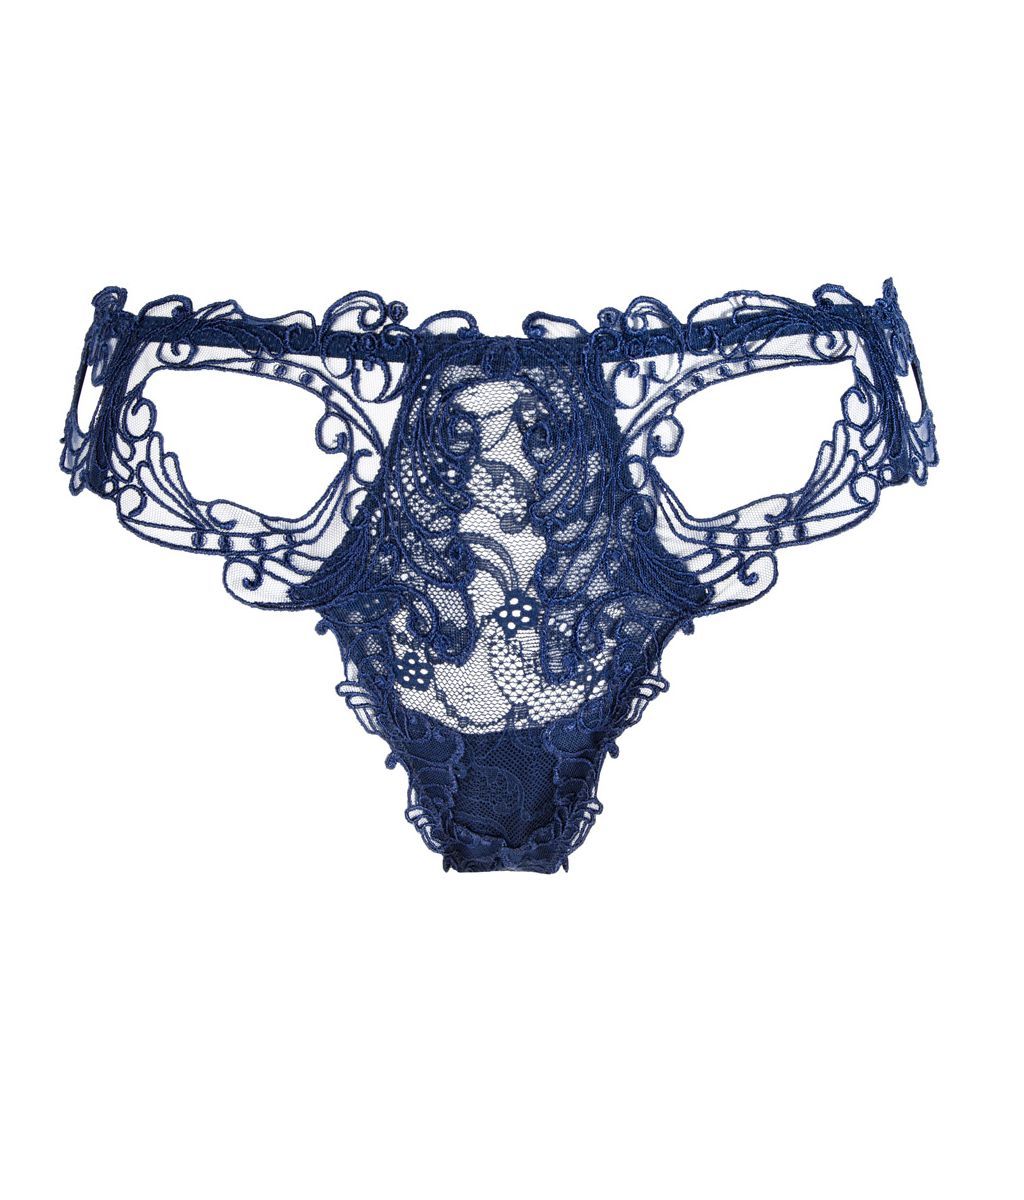 Lise Charmel 'Soir de Venise' (Bleu Venise) Luxury Thong - Sandra Dee - Product Shot - Front